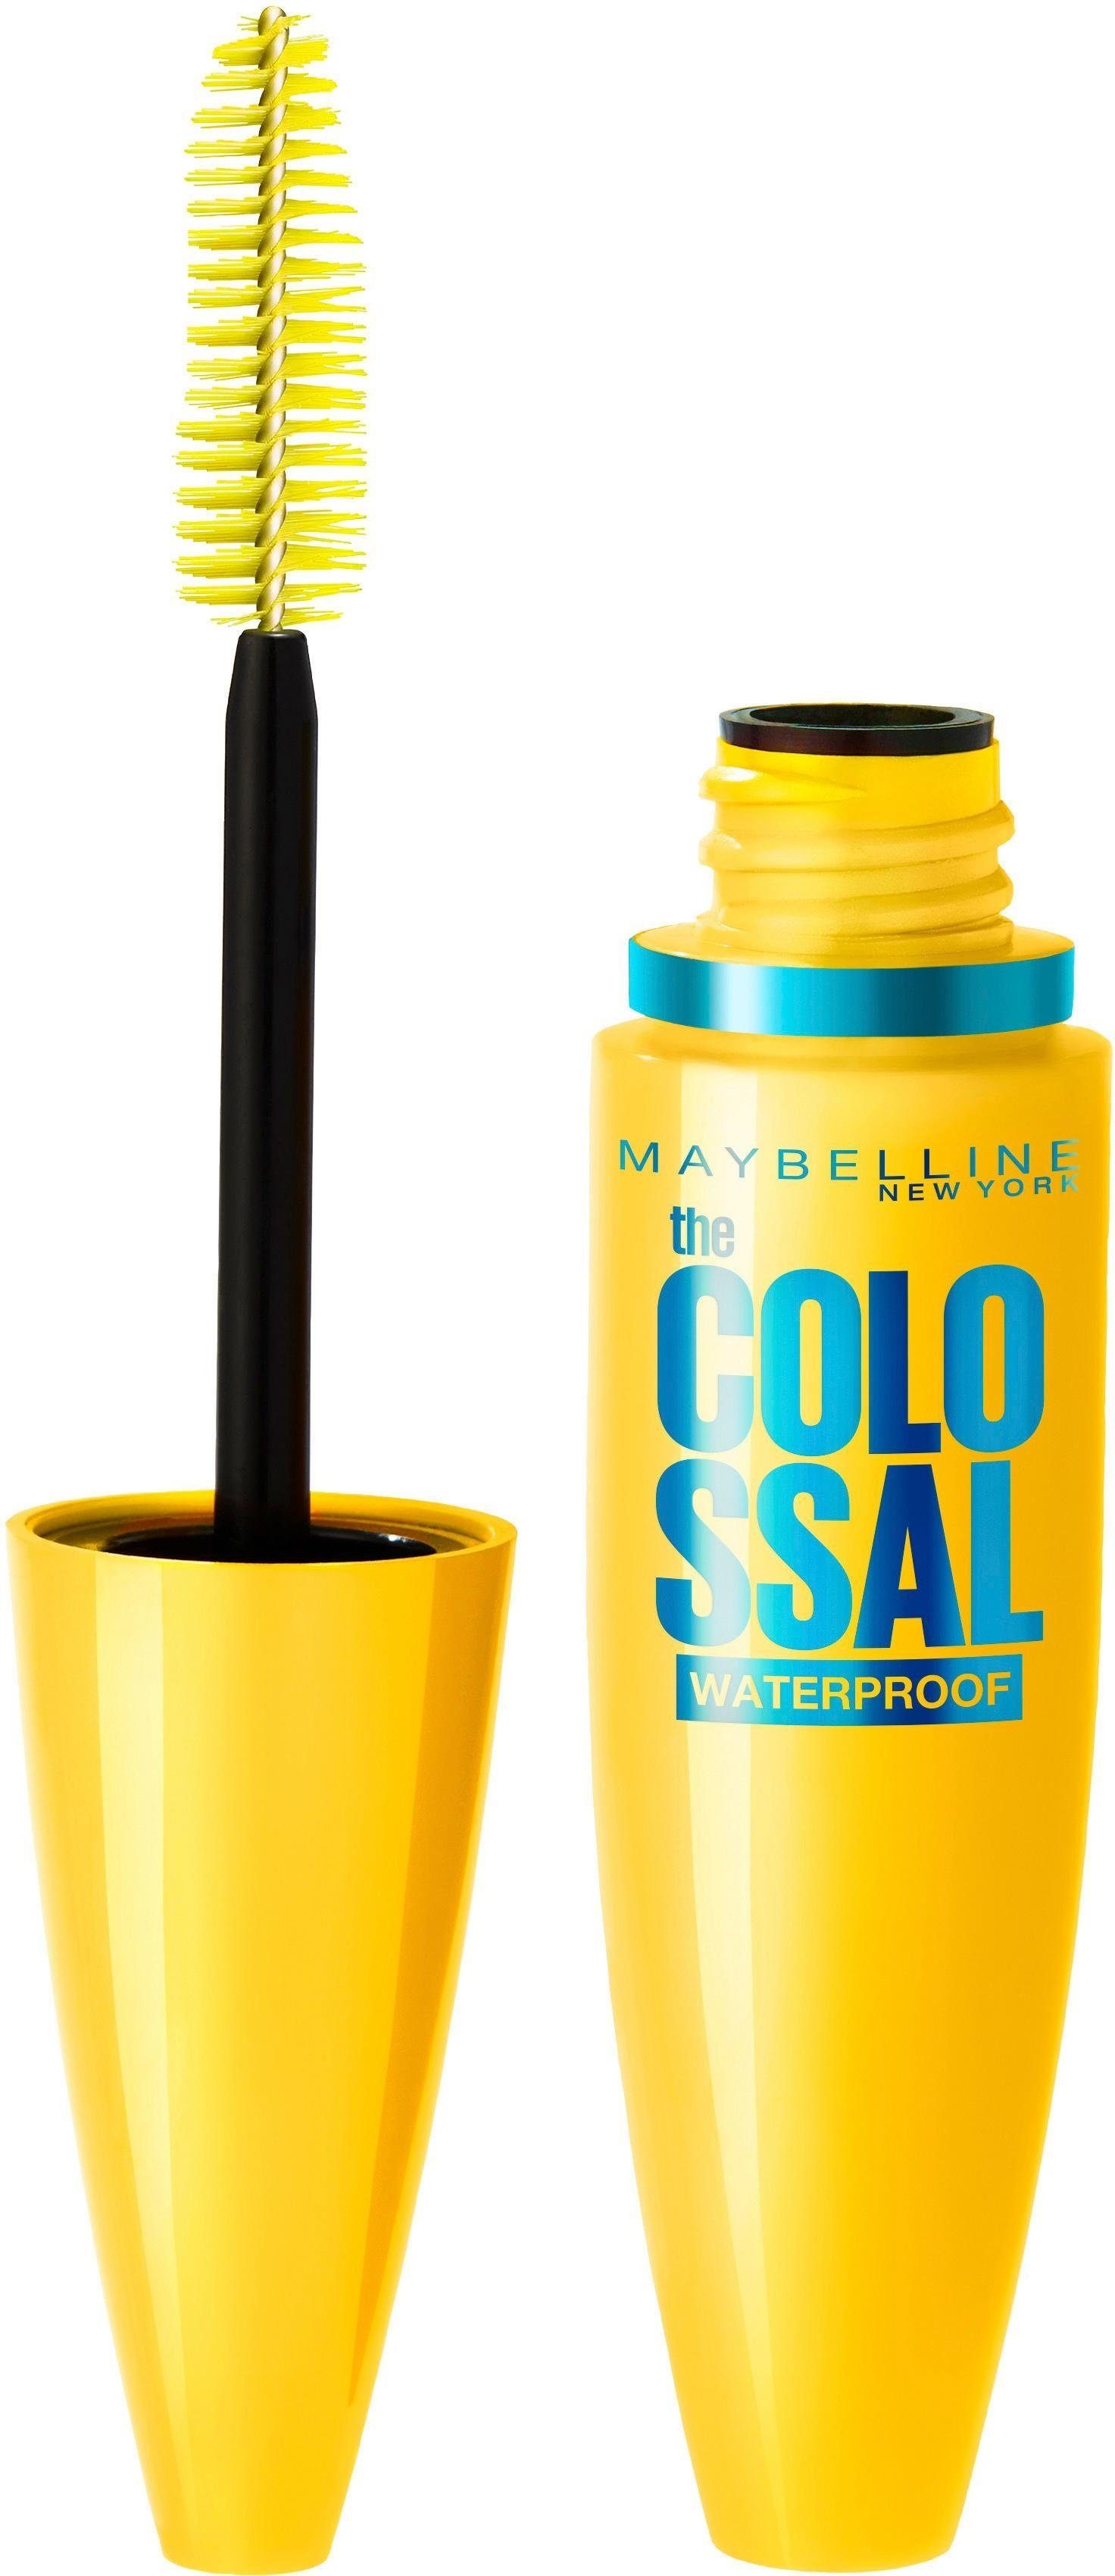 MAYBELLINE NEW YORK Mascara VEX Colossal Waterproof, Mit Collagen und Bienenwachs